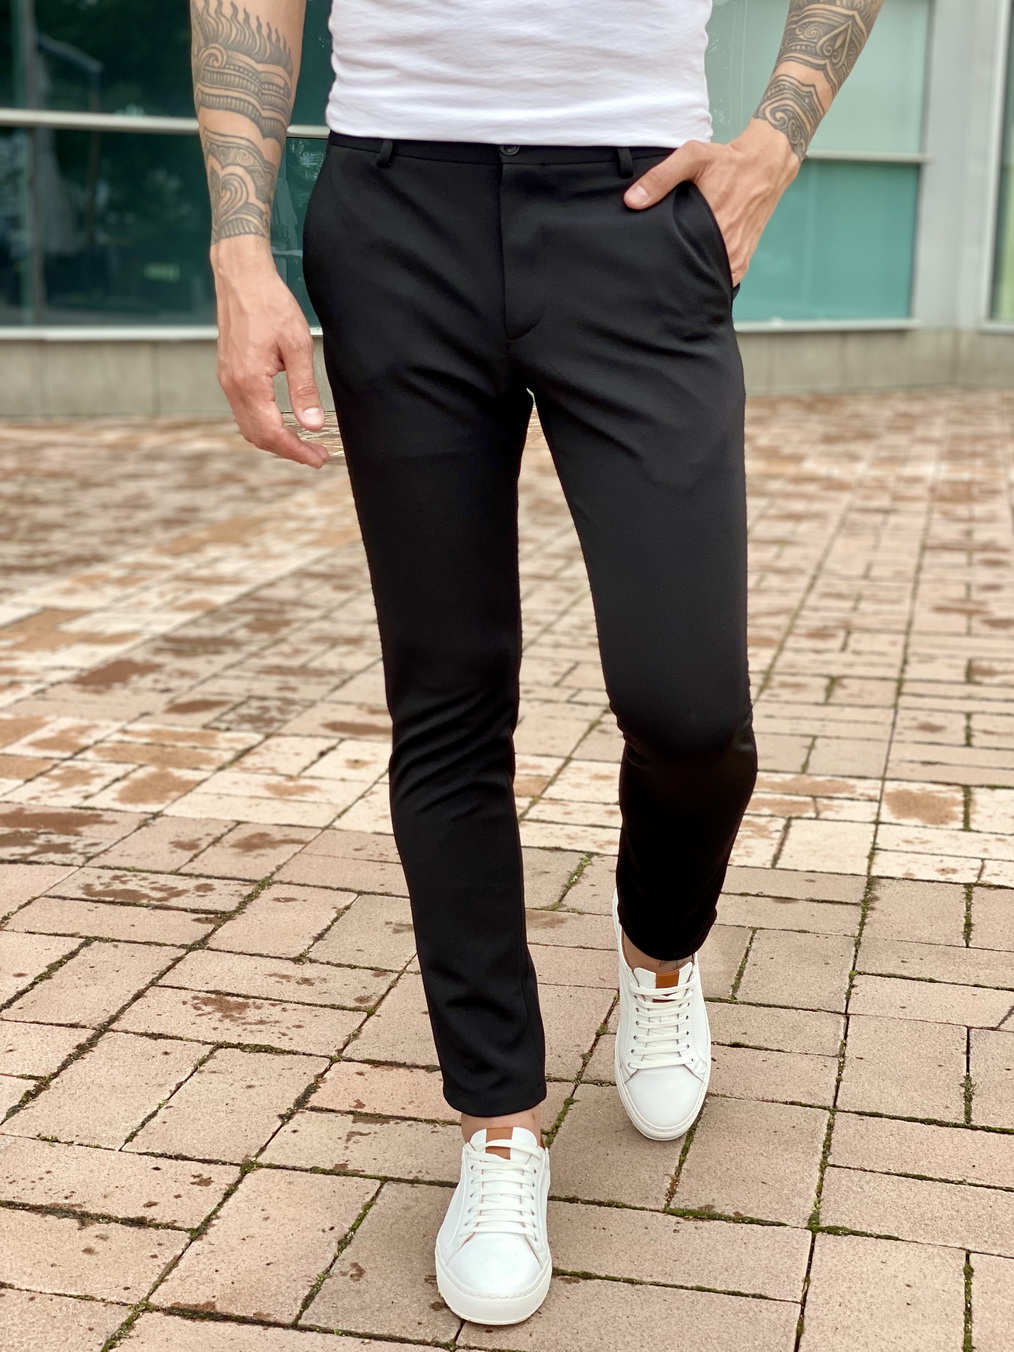 Зауженные черные брюки. Арт.:2318 – купить в магазине мужской одеждыSmartcasuals